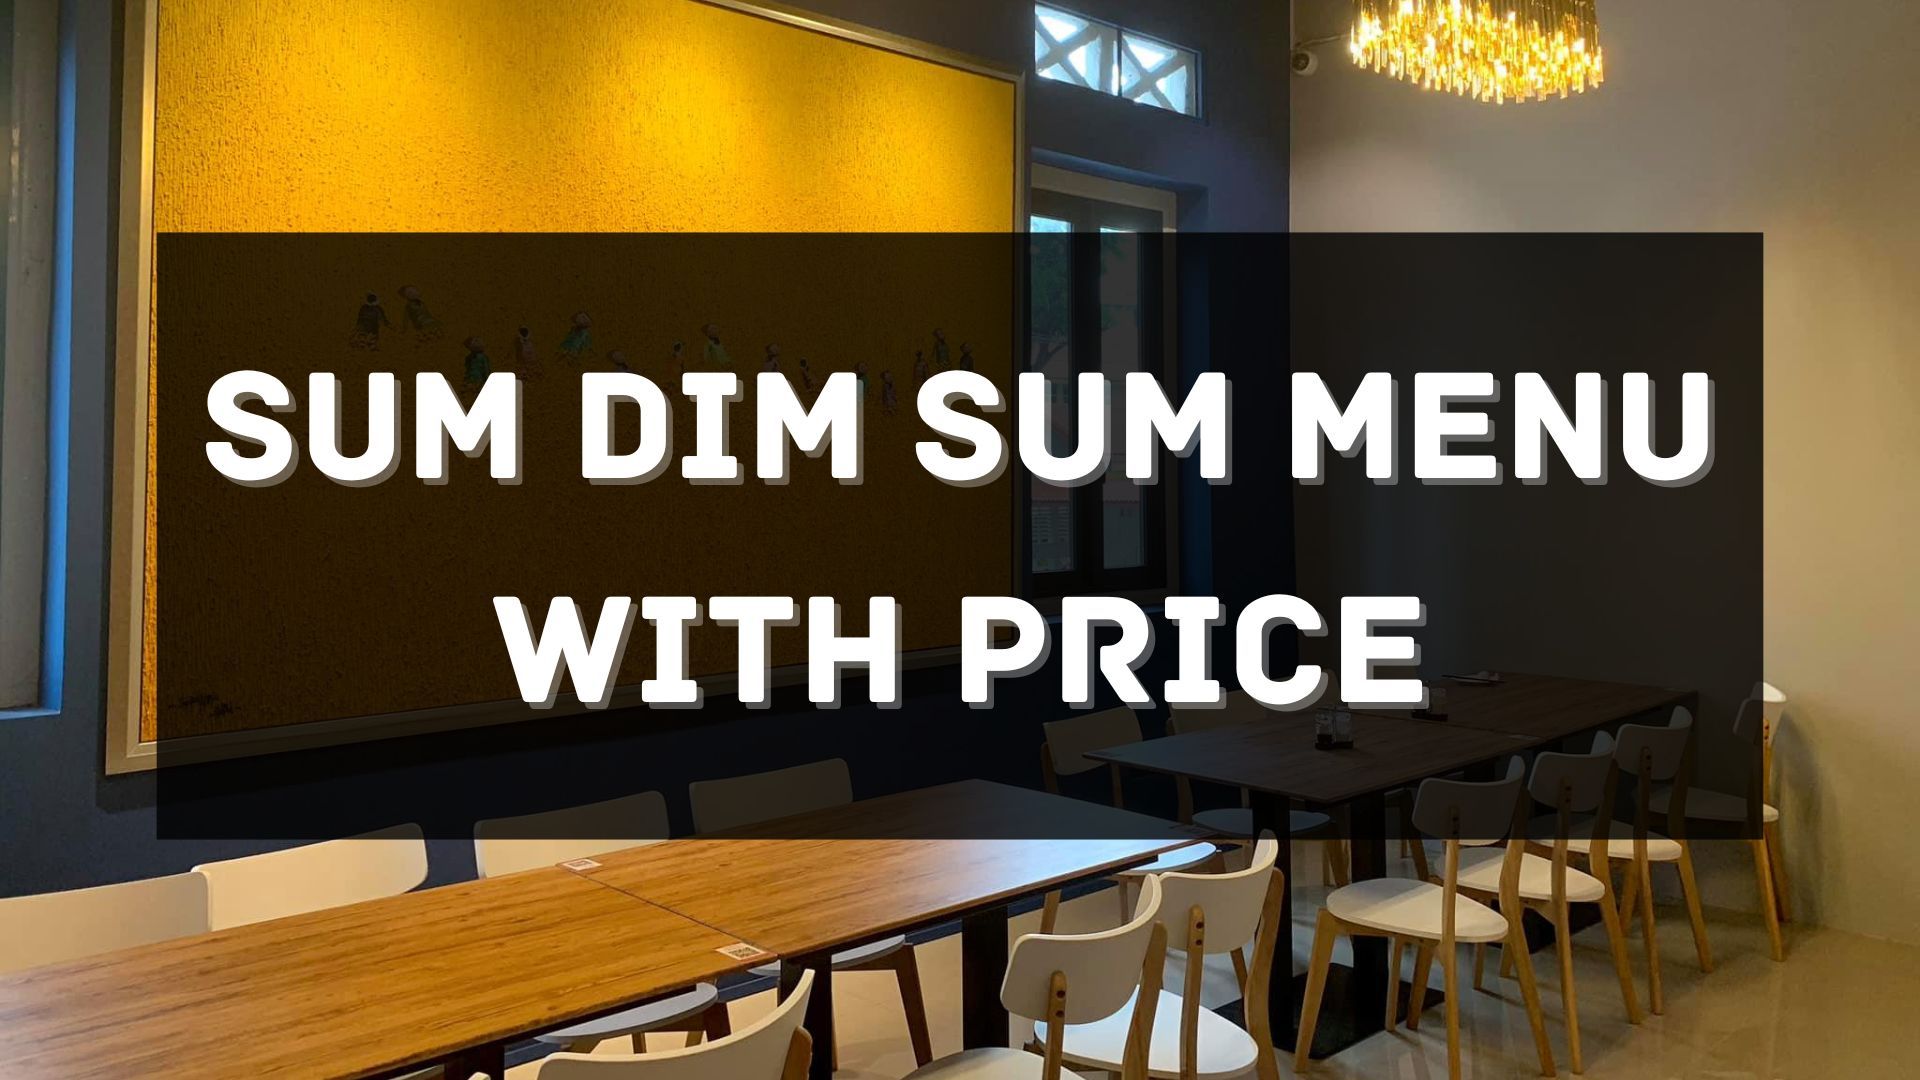 sum dim sum menu prices singapore